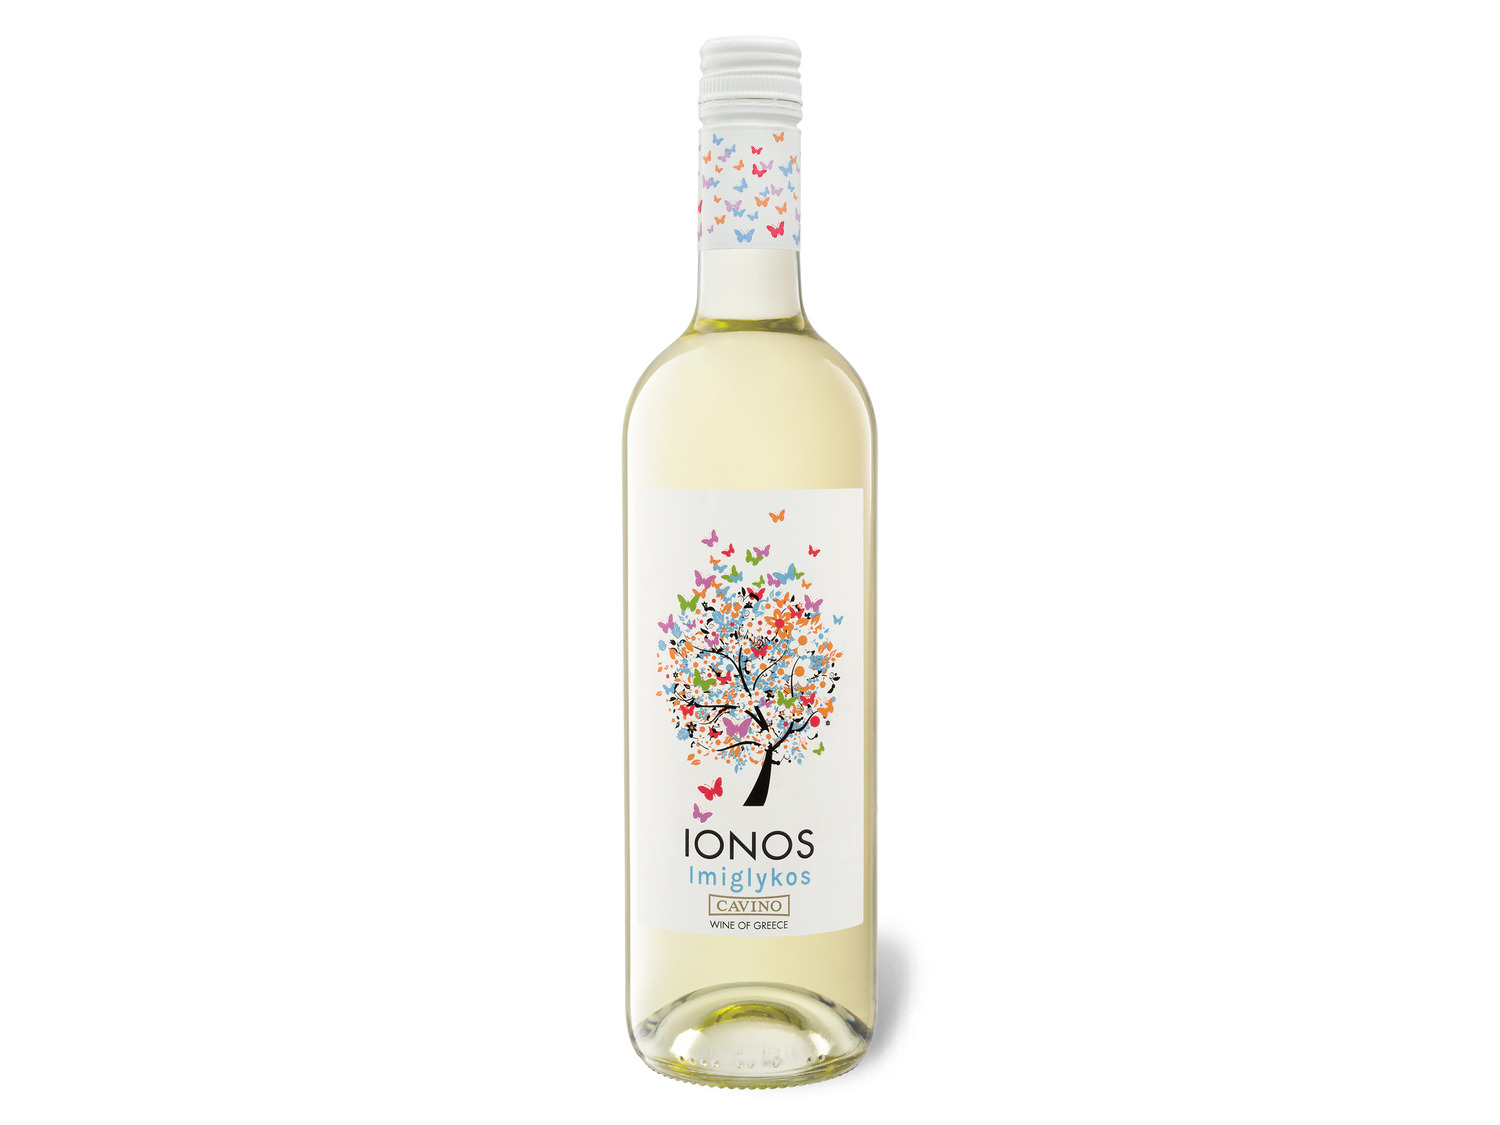 Cavino Ionos Imiglykos lieblich, Weißwein | LIDL